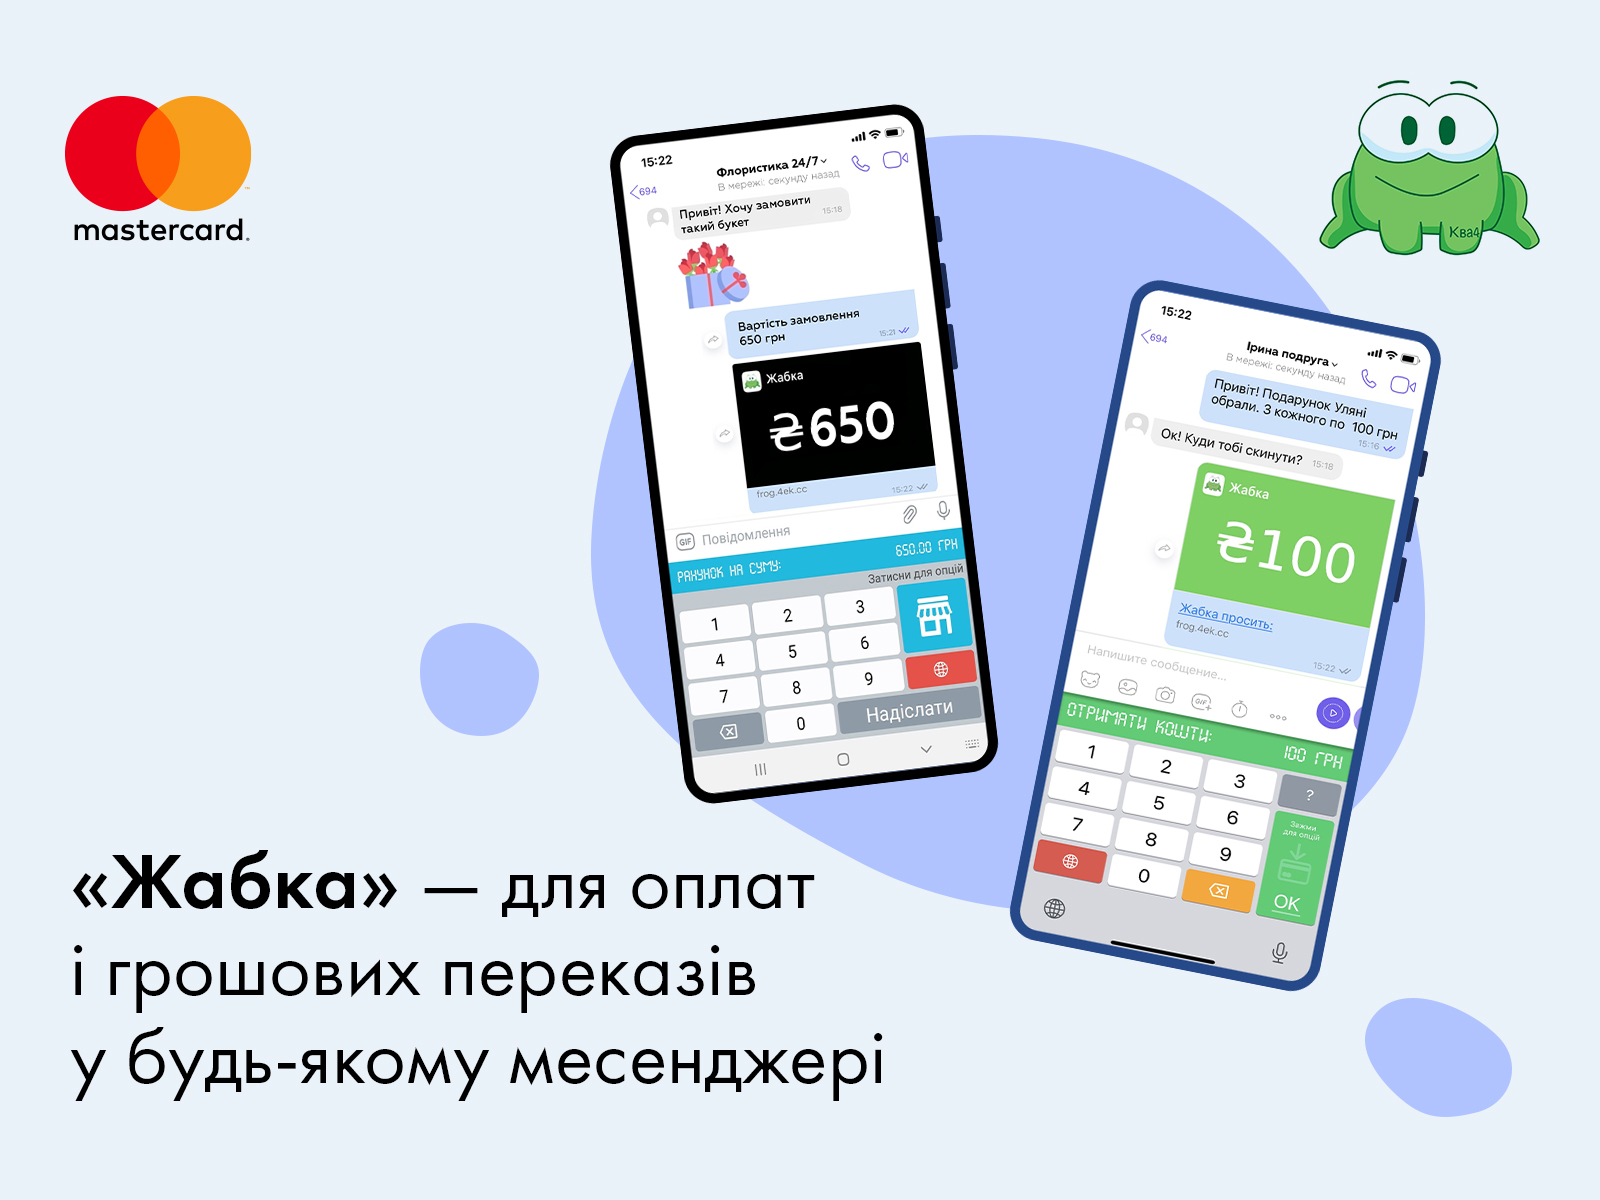 Mastercard запускає «Жабку» — перший в Україні платіжний сервіс для покупок та переказу грошей прямо в месенджері та соцмережах